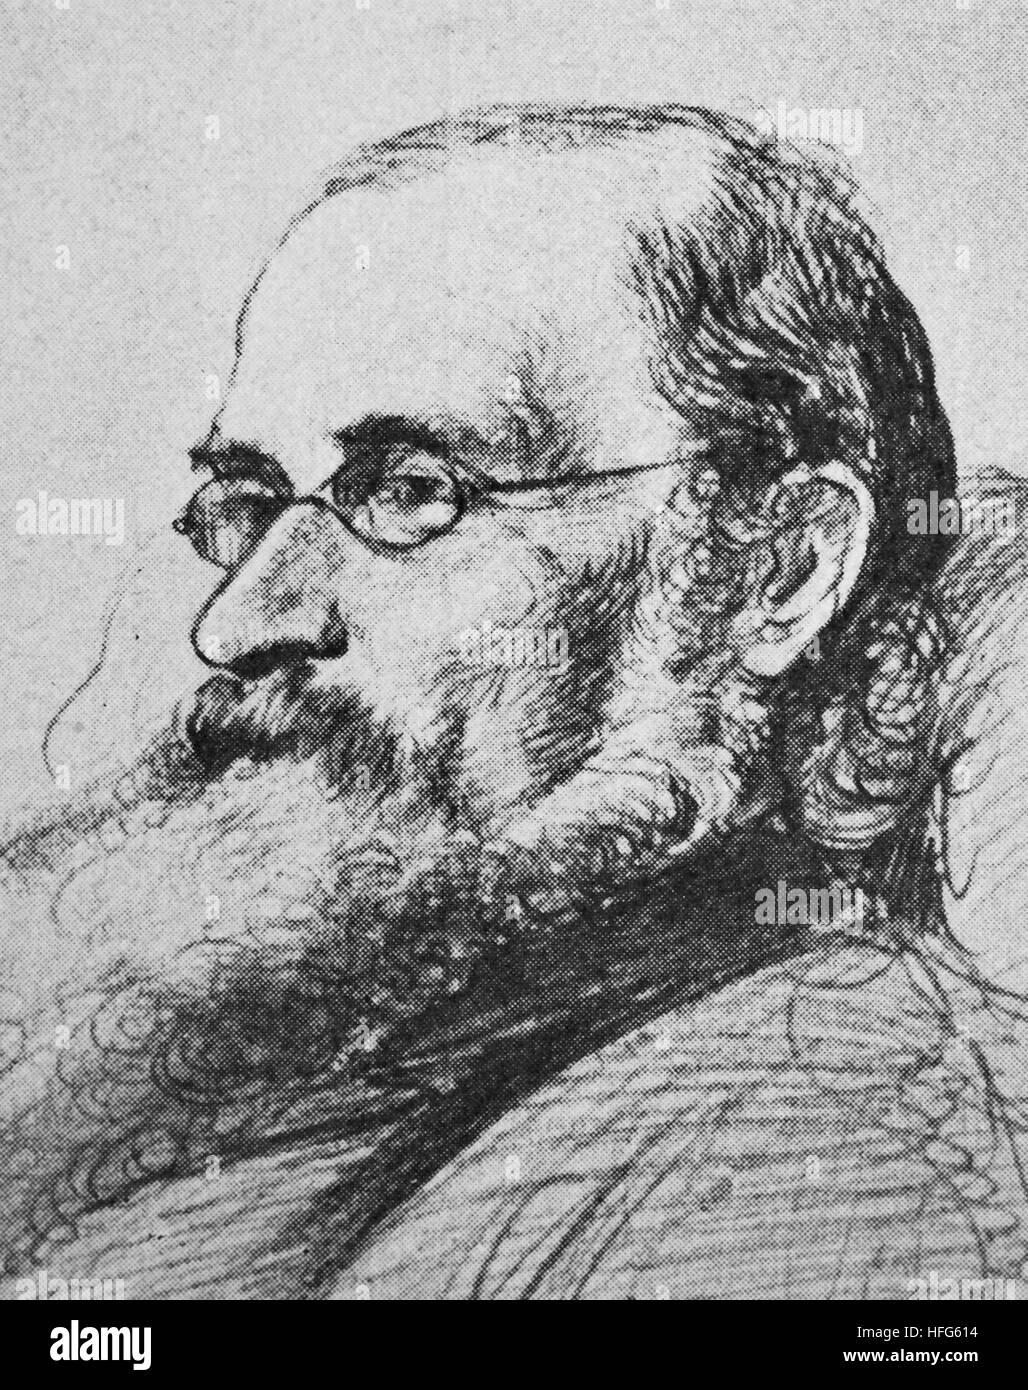 Arrey von Dommer, 1828 -1905, war ein deutscher Musikhistoriker und Bibliothekar., reproduction photo from the year 1895, digital improved Stock Photo